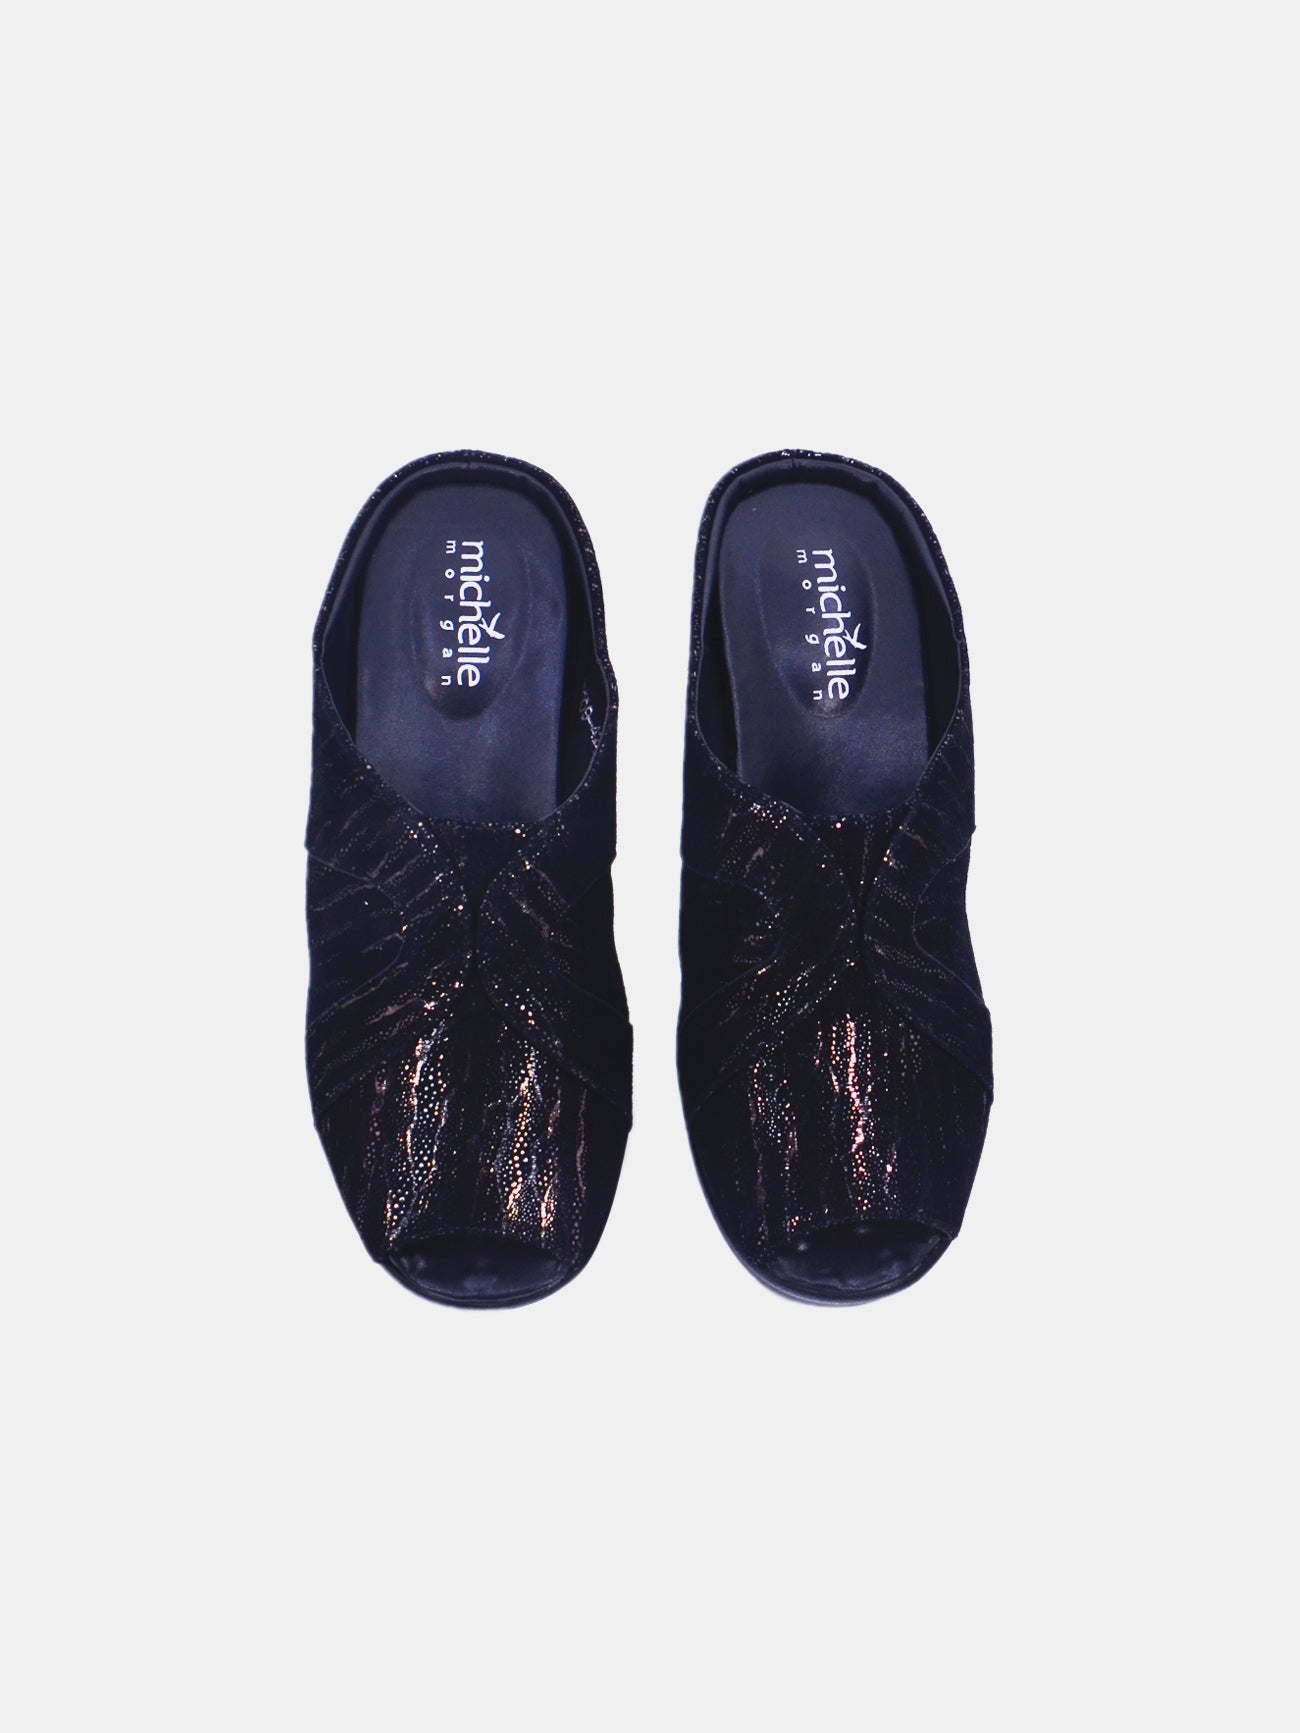 Michelle Morgan 19009-42 Women's Wedge Sandals #color_Black